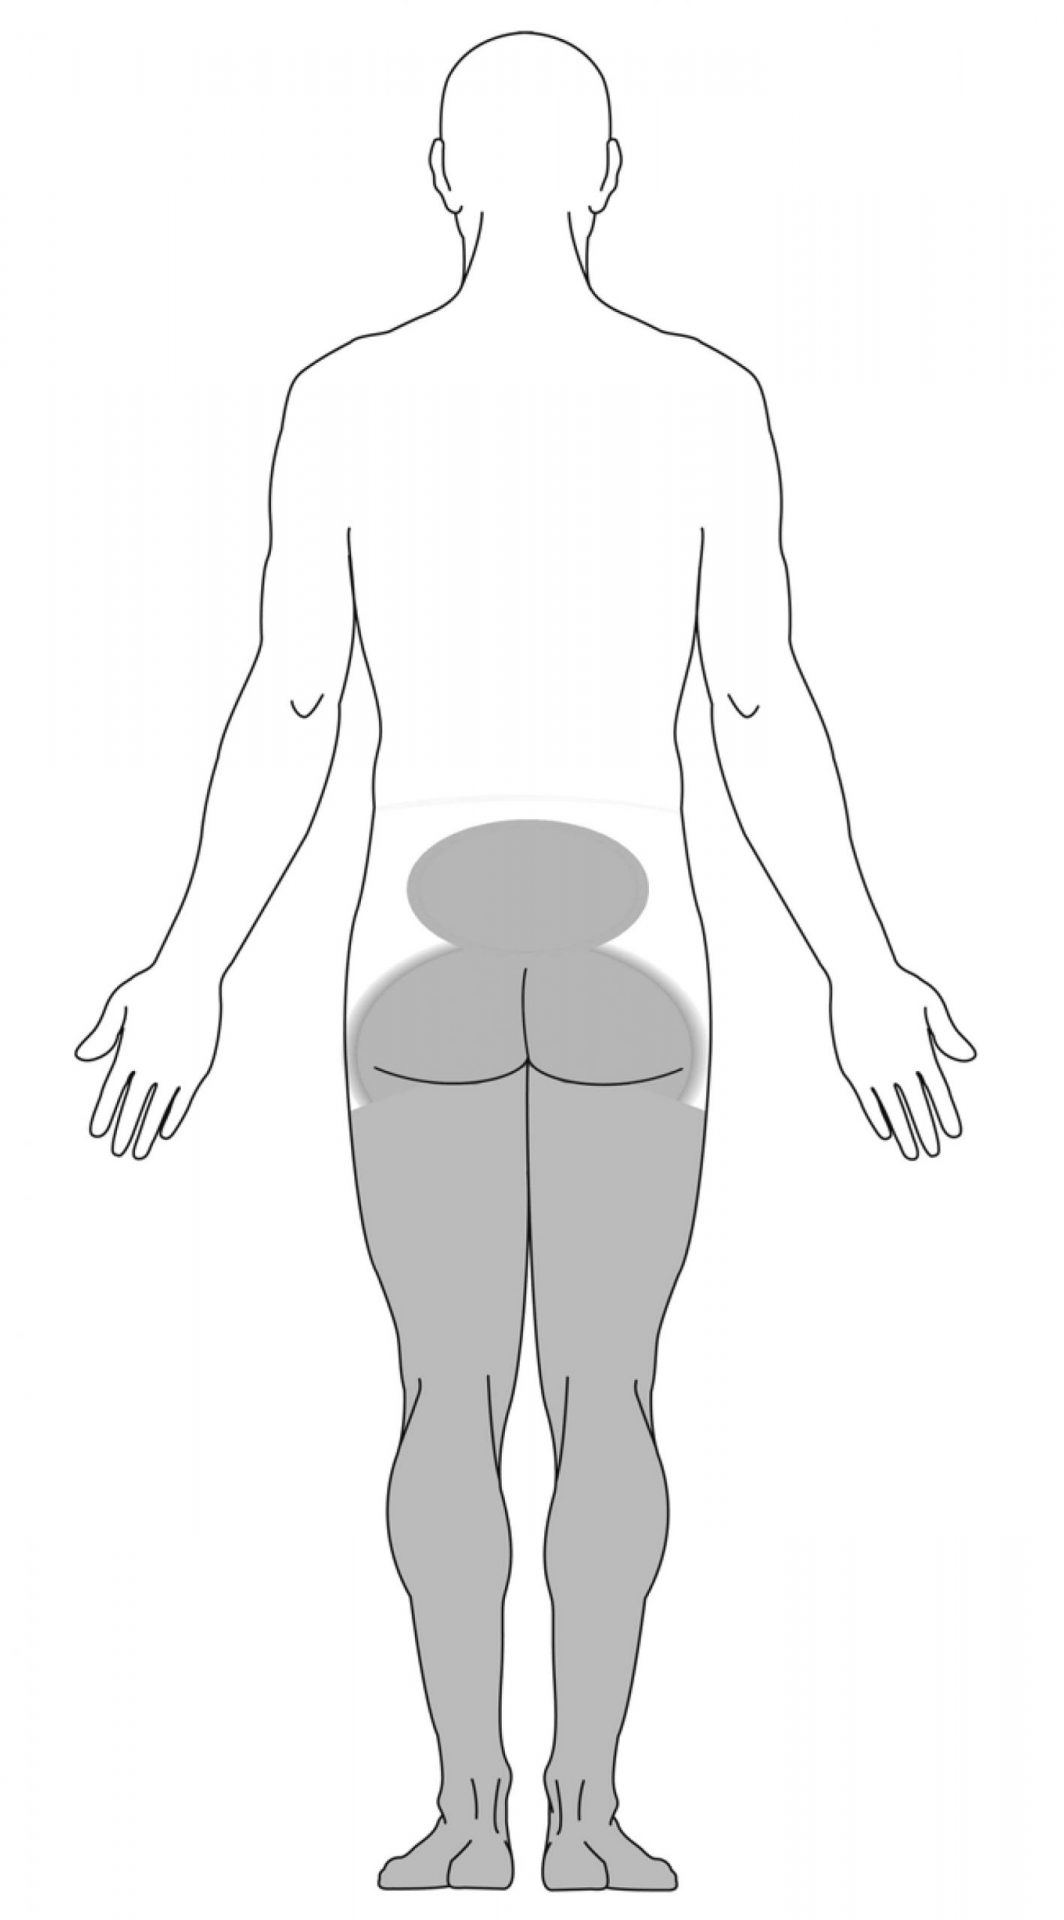 symptômes dans les jambes suites à un syndrome de la queue de cheval